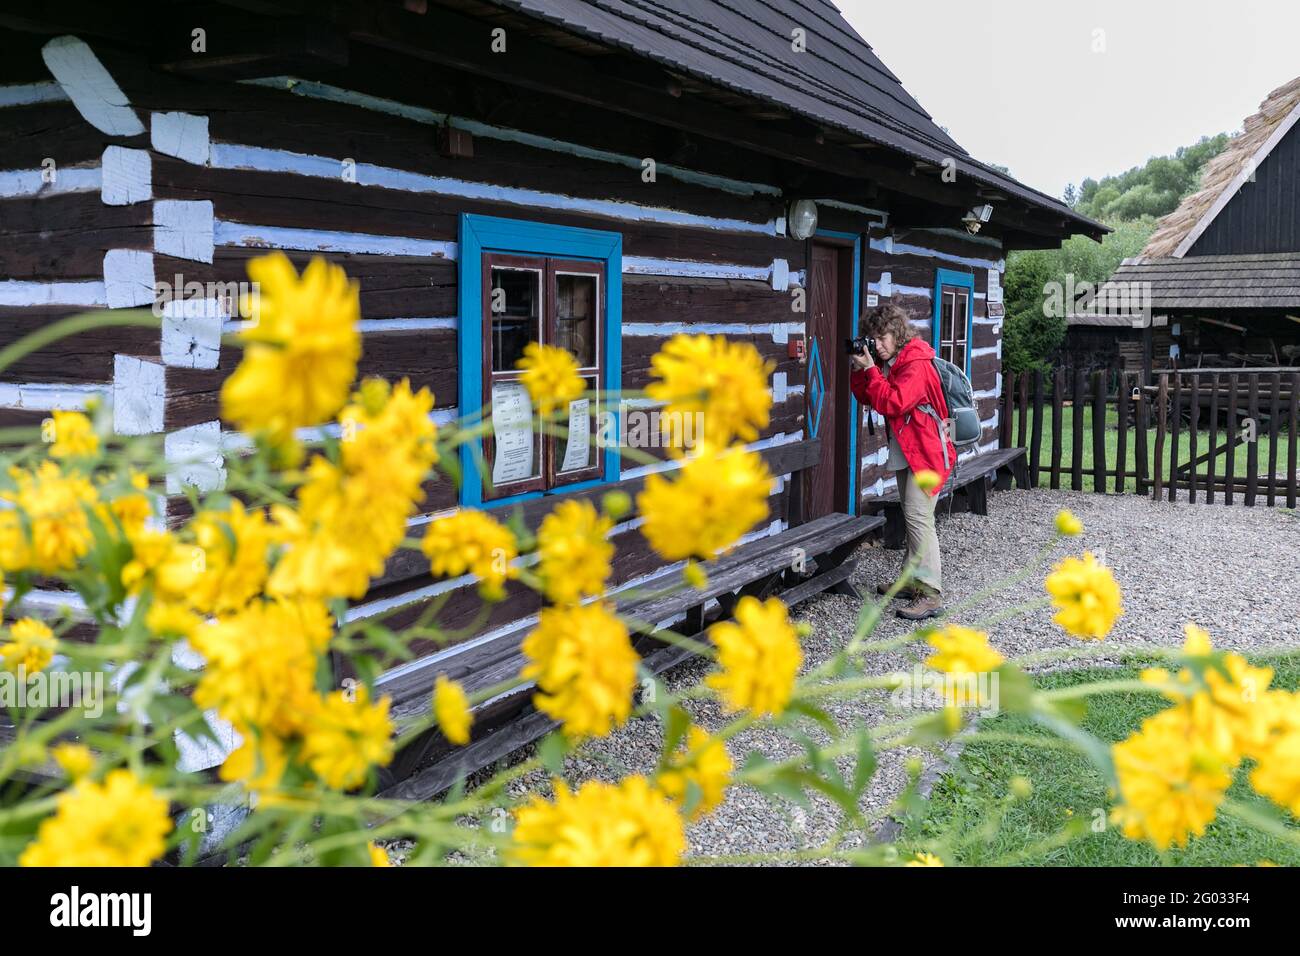 Zyndranowa, Polen - 13. August 2017: Ein Tourist fotografiert vor einem typischen Lemko-Haus im Lemko-Kulturmuseum. osteuropa Stockfoto